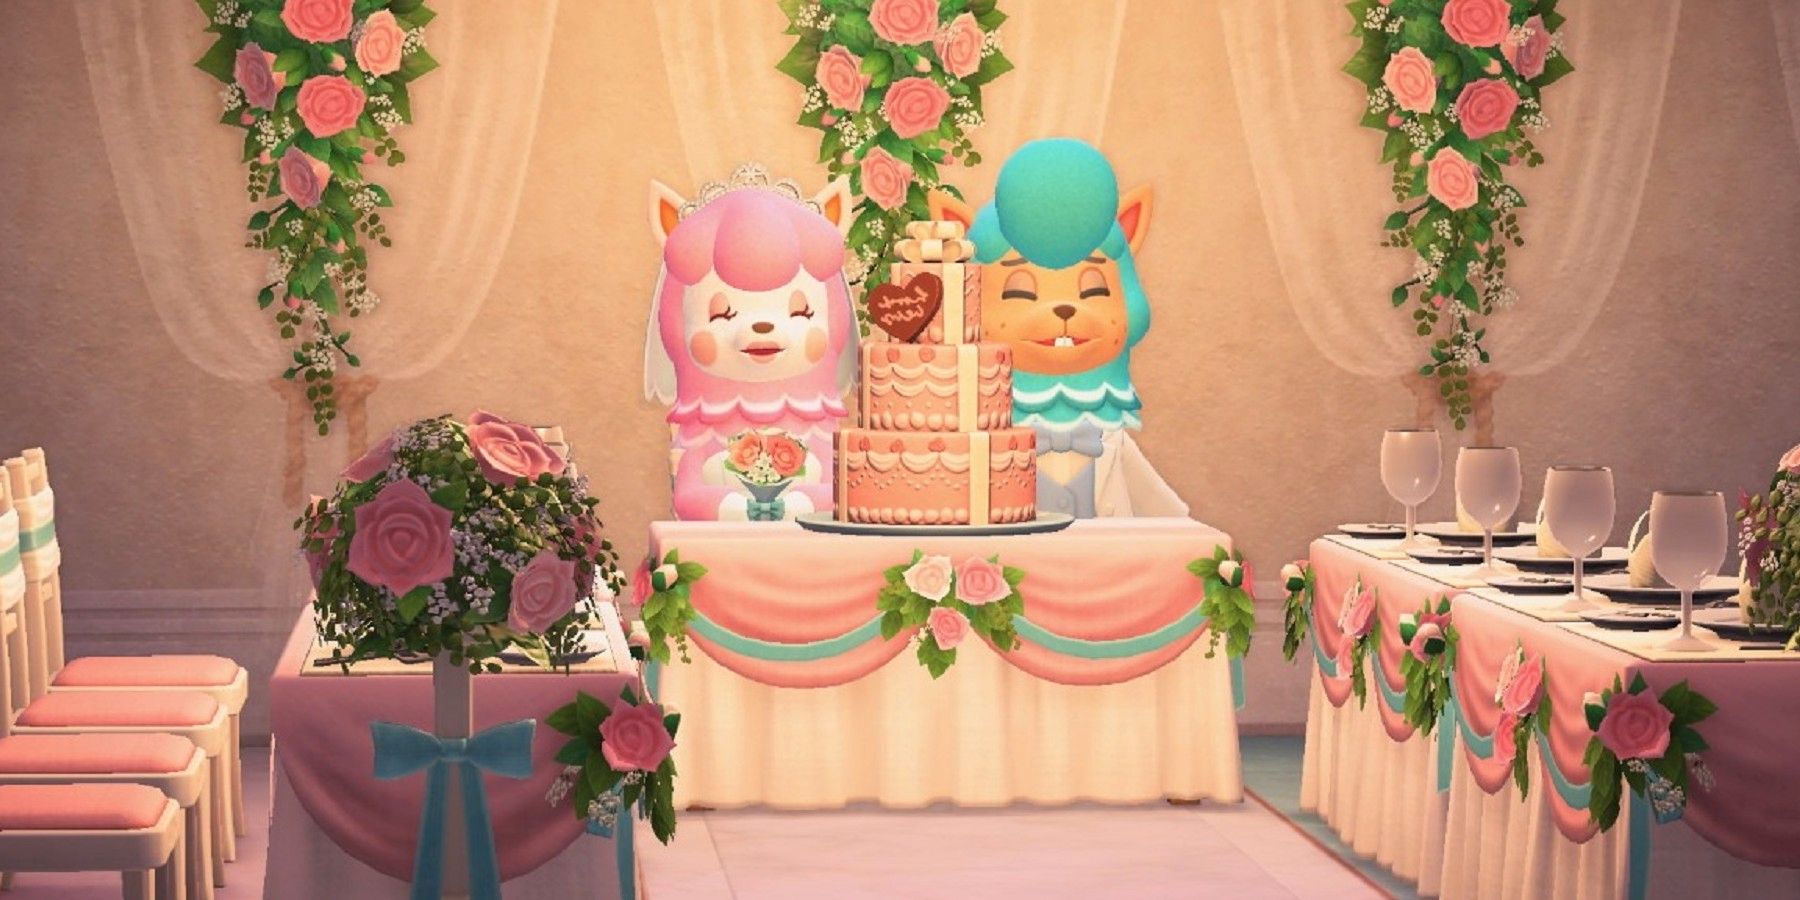 Фанат Animal Crossing создал уникальные украшения для свадебного торта